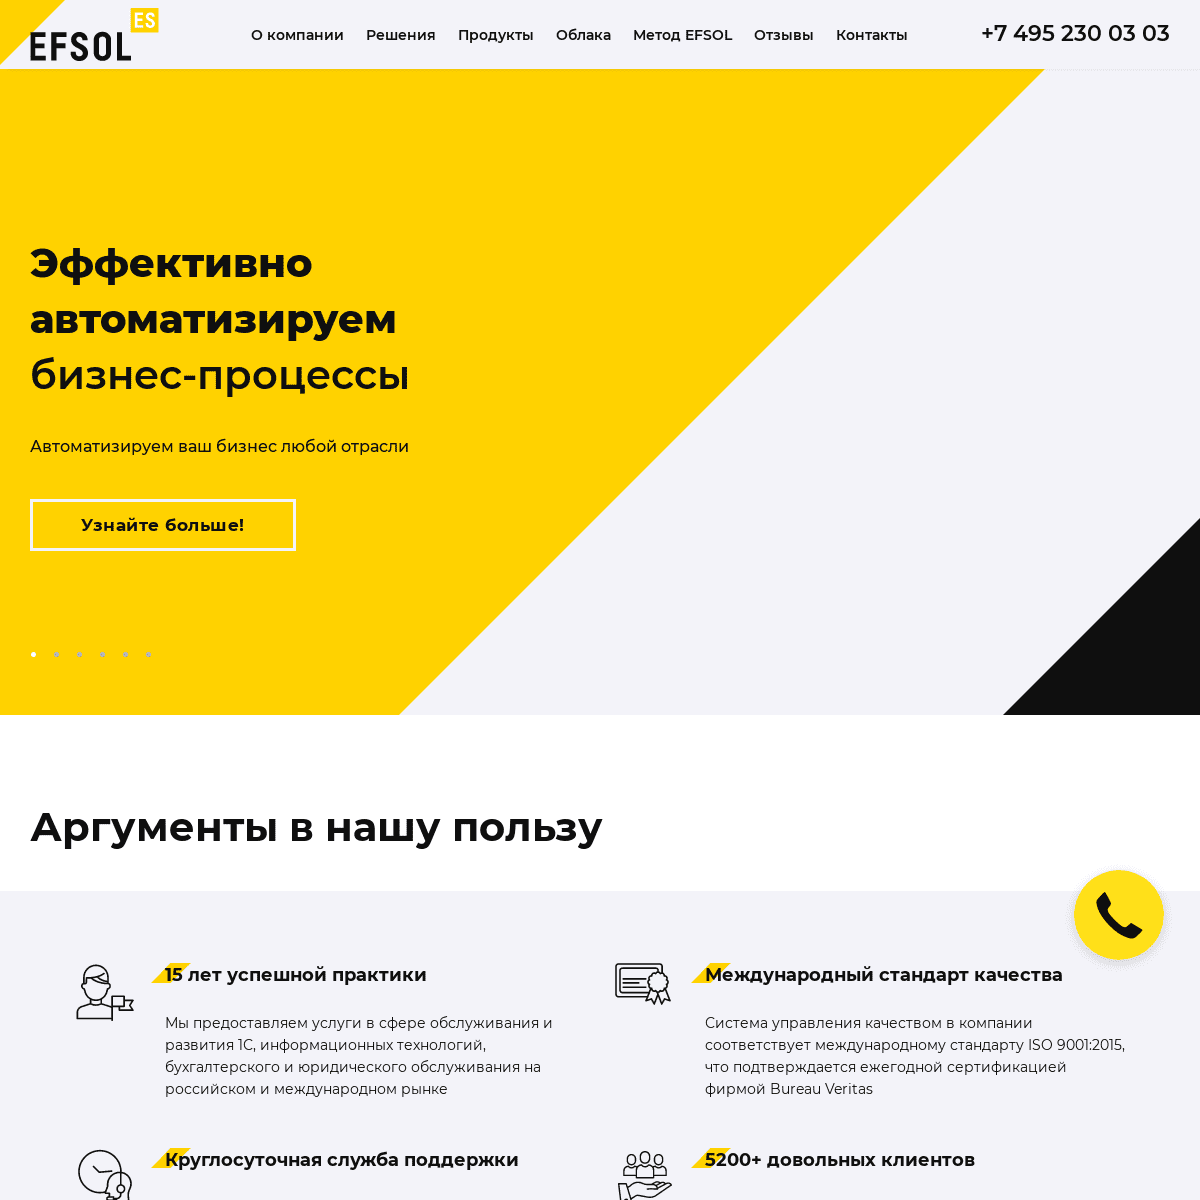 A complete backup of https://efsol.ru